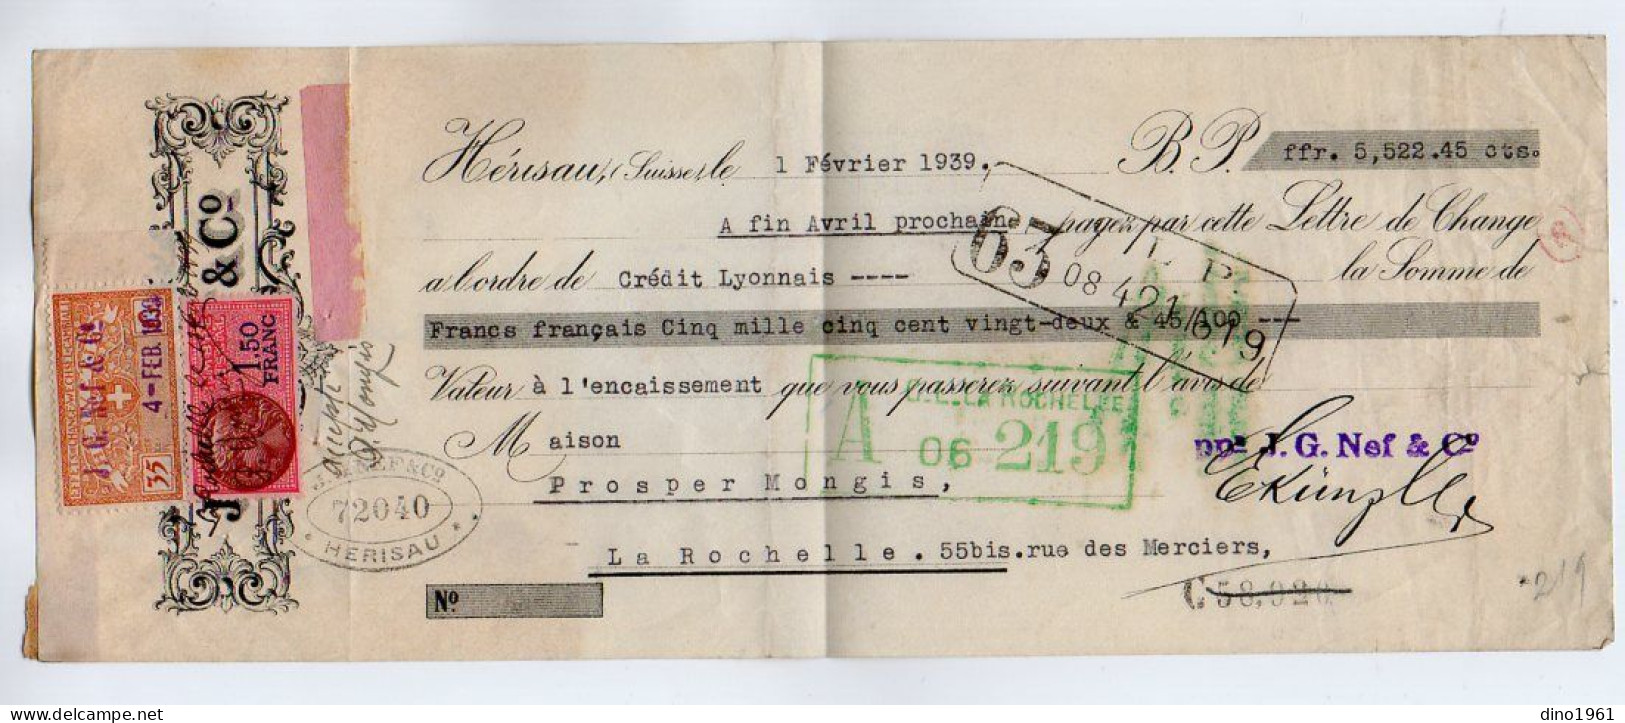 VP22.579 - Lettre De Change - HERISAU,Suisse 1939 - J. G. NEF & Co - Fiscal,Effets De Change - WECHSEL - CAMBIALI . 5Cs - Cambiali